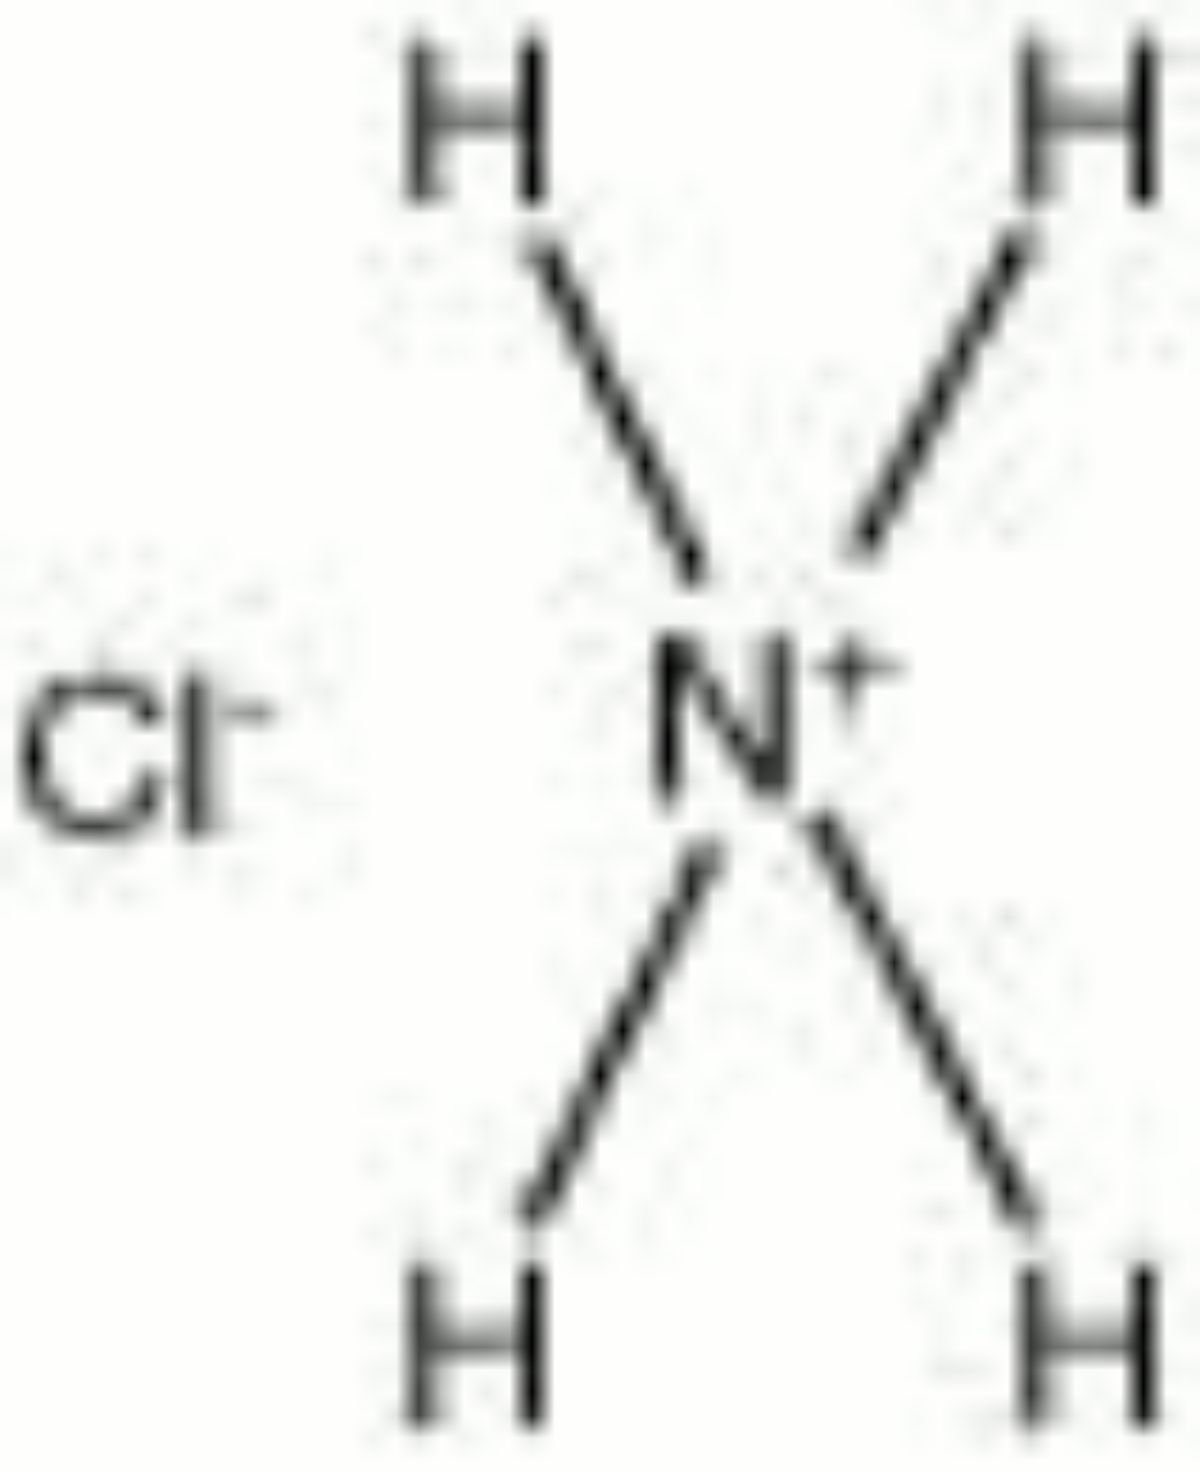 Nh3 nh4ci. Nh4cl структура Льюиса. Nh4cl структурная формула. Nh4cl графическая формула. Структурная формула в хлориде аммония nh4cl.